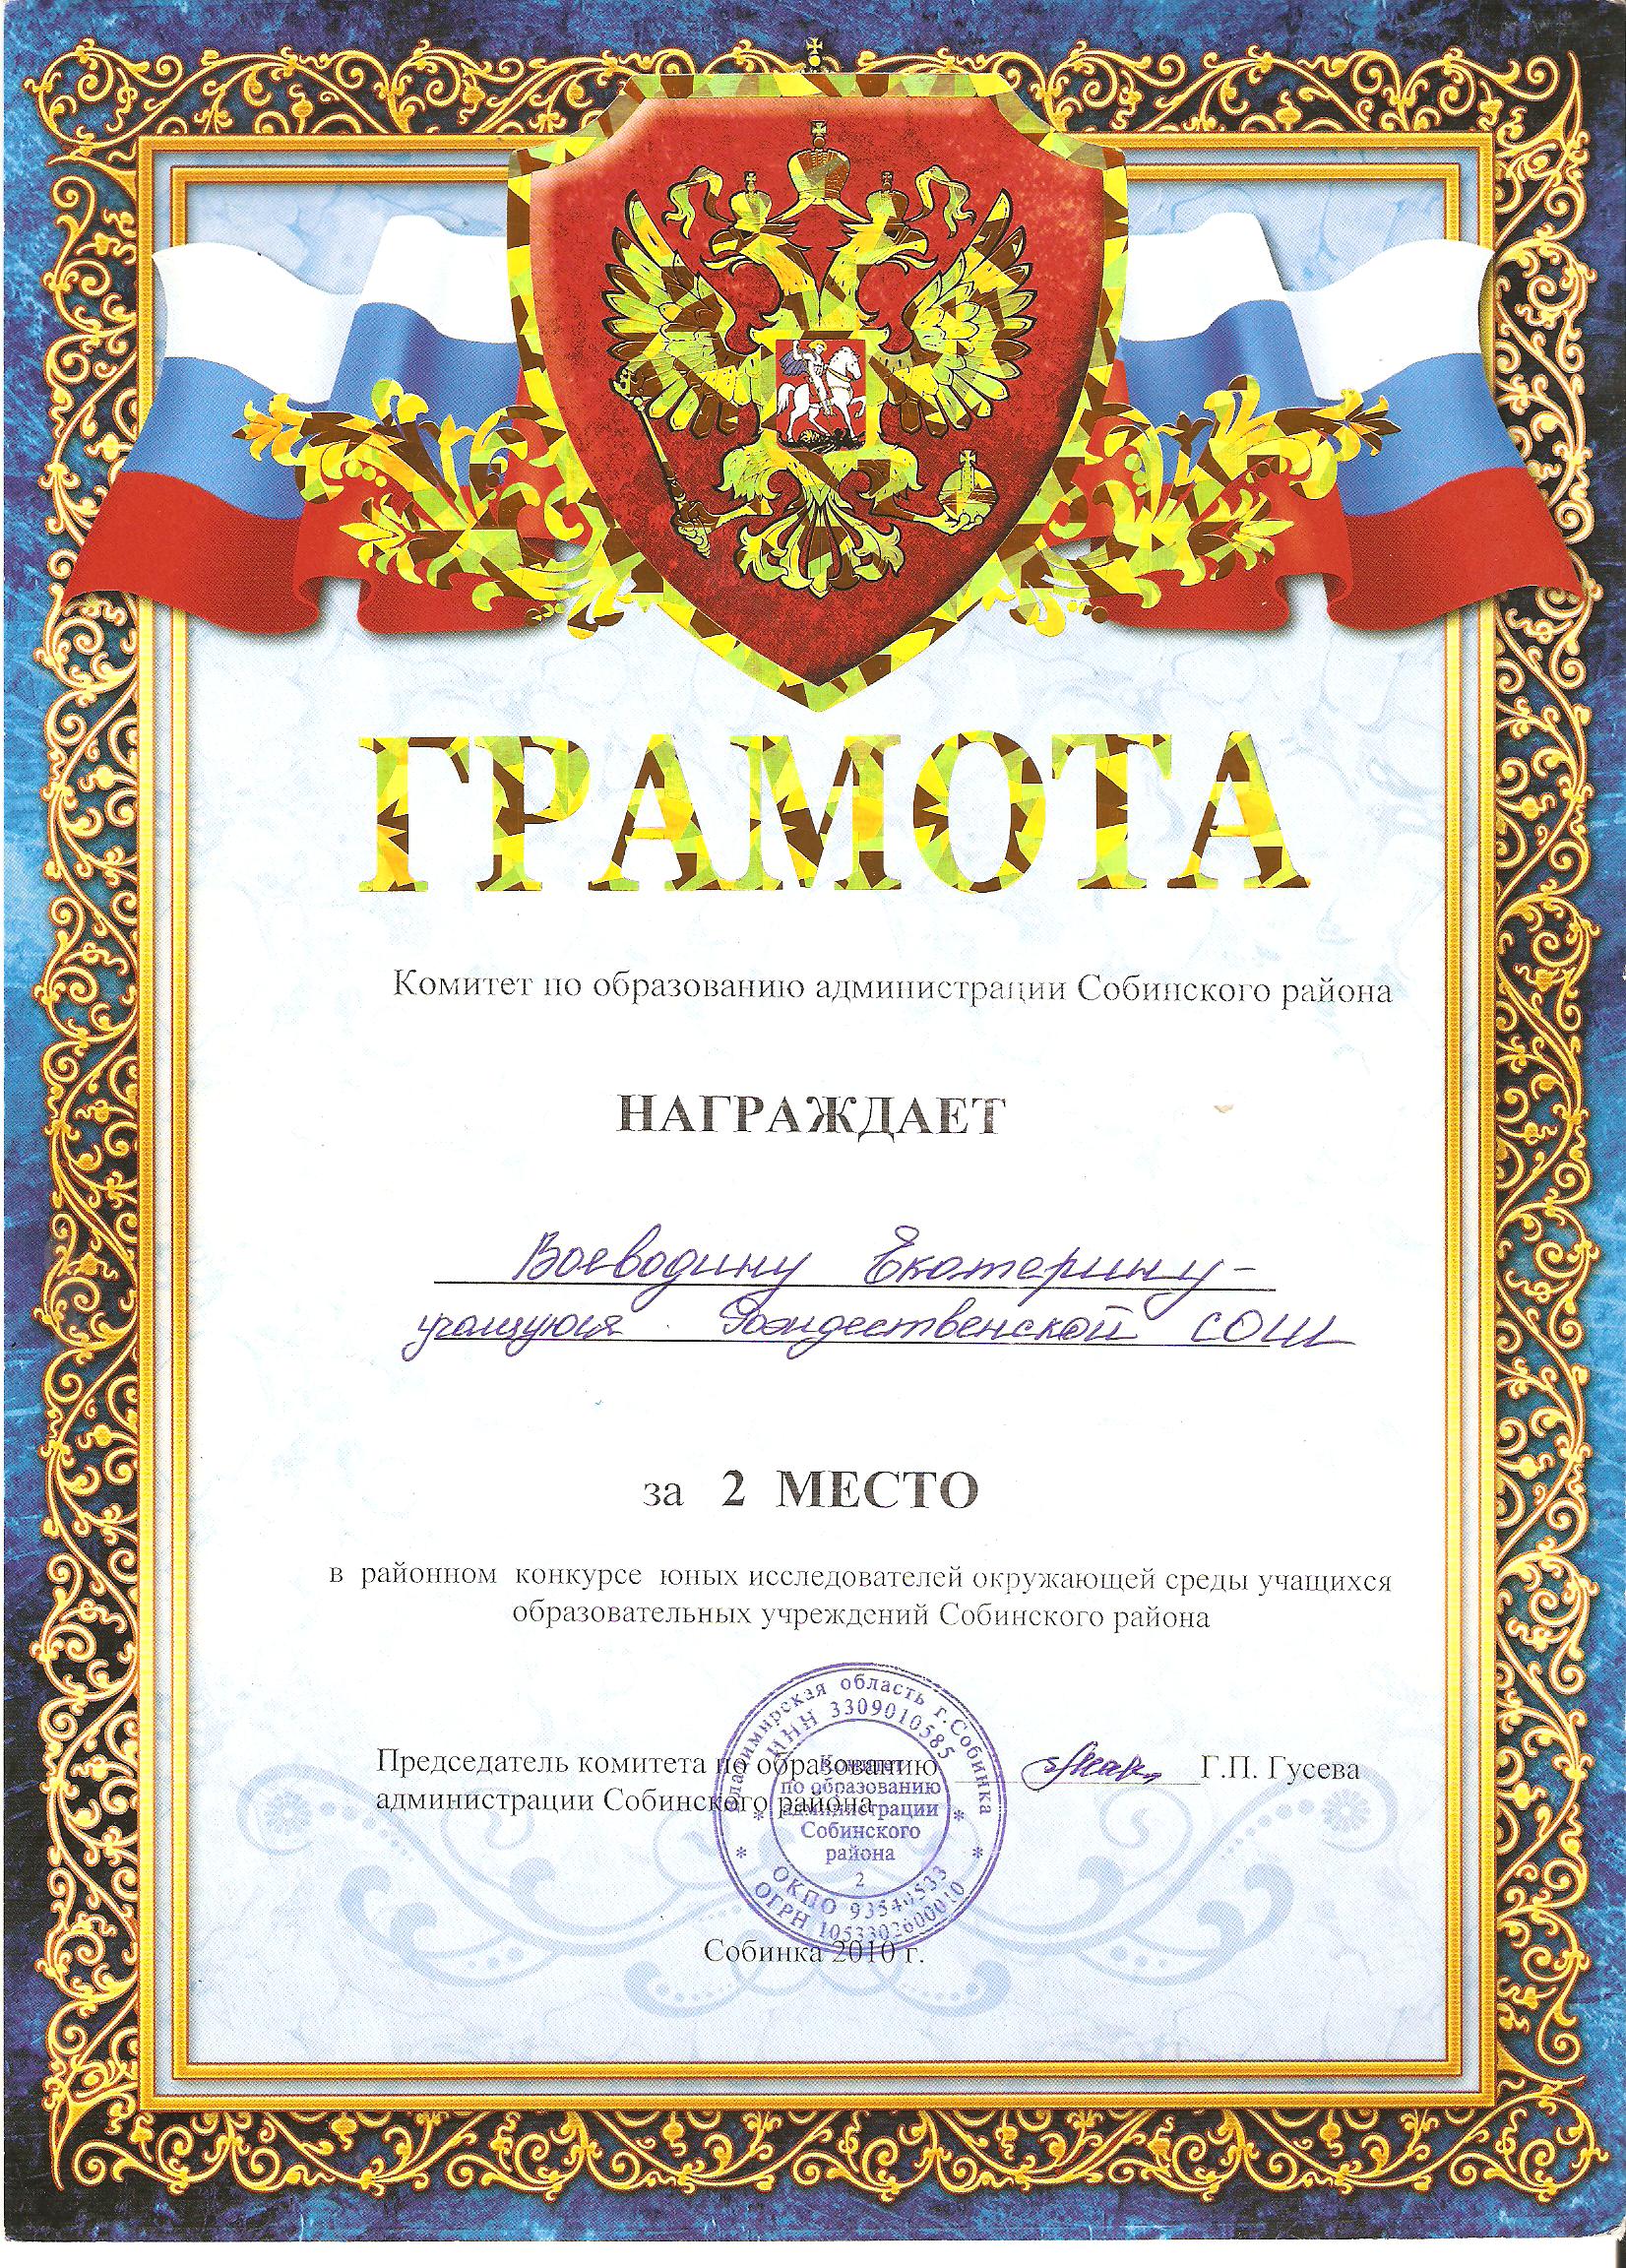  http://roshsob.ucoz.ru/gramoti-uchenik/UIOS/voevodina_k-2_mesto_ehkol_konkurs_2010.jpg